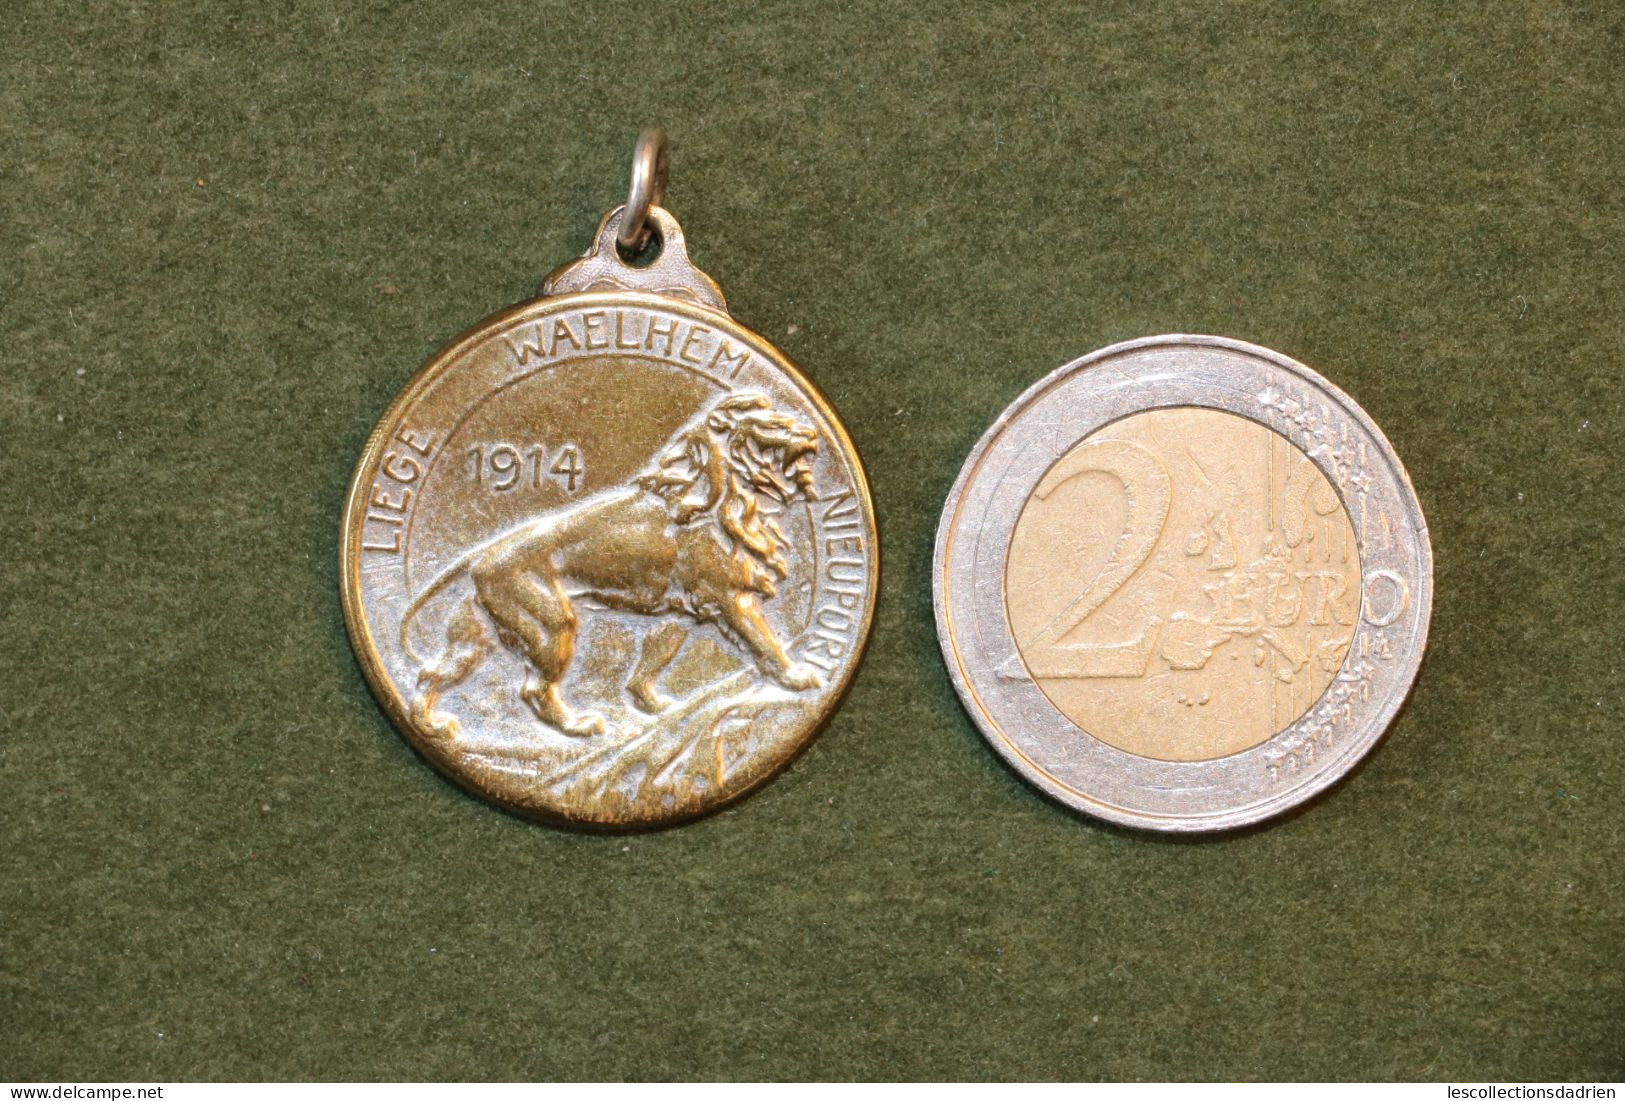 Médaille Belge Liège Waelhem Nieuport Guerre 14-18 - Belgian Medal WWI Médaillette Journée - Bélgica